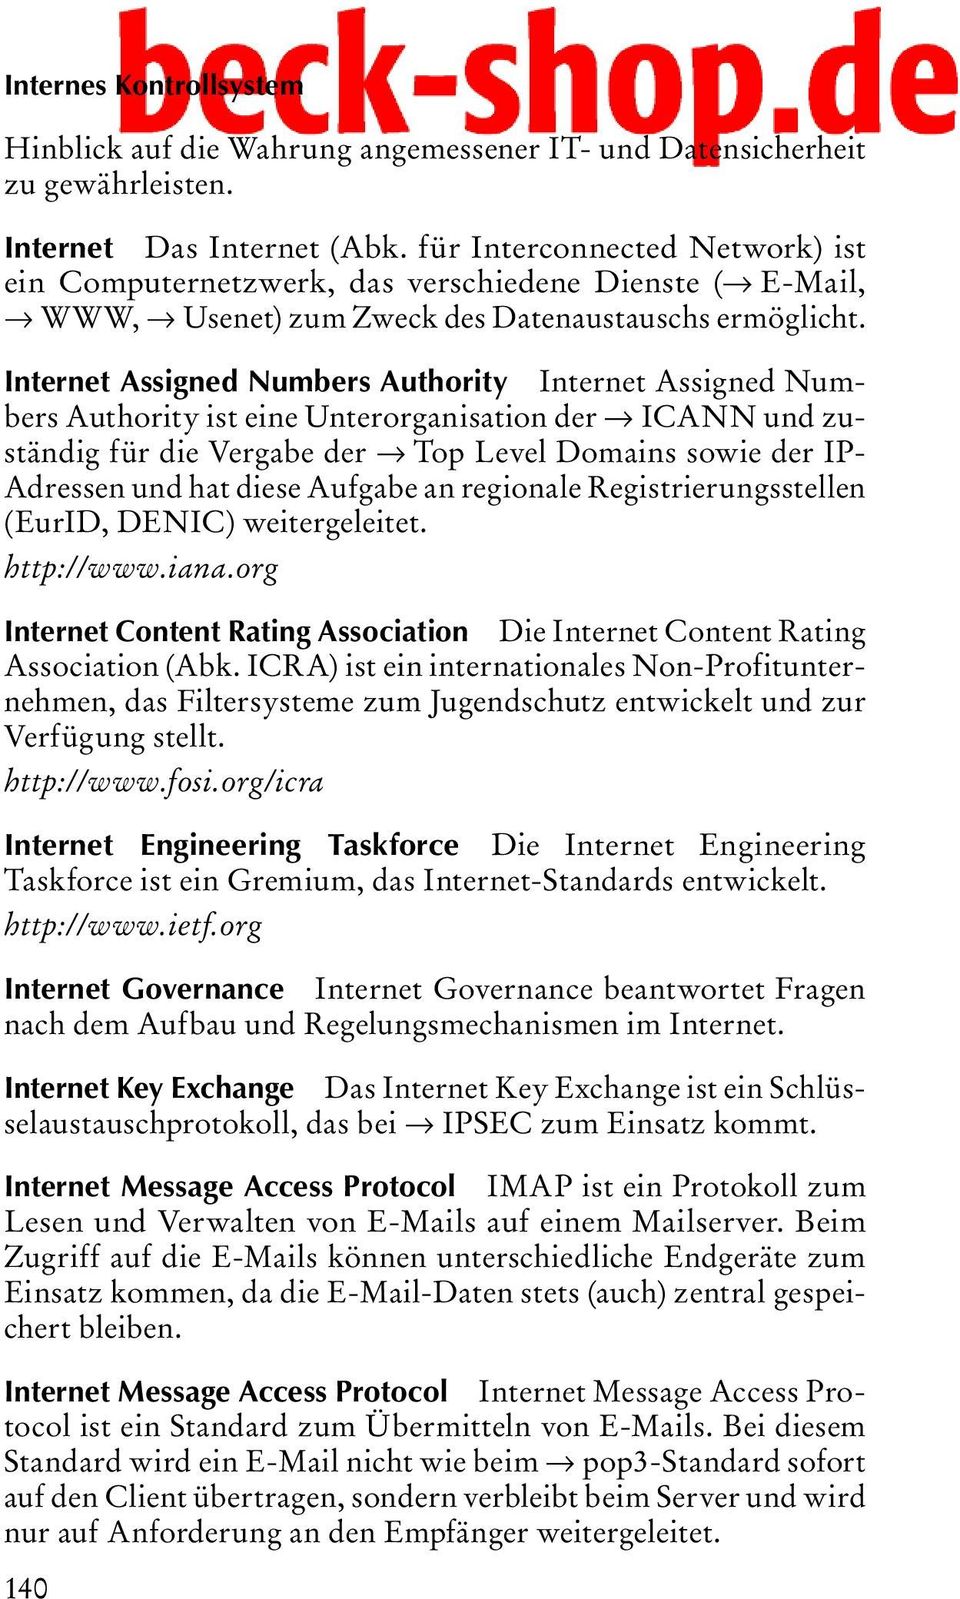 Internet Assigned Numbers Authority Internet Assigned Numbers Authority ist eine Unterorganisation der ICANN und zuständig für die Vergabe der Top Level Domains sowie der IP- Adressen und hat diese